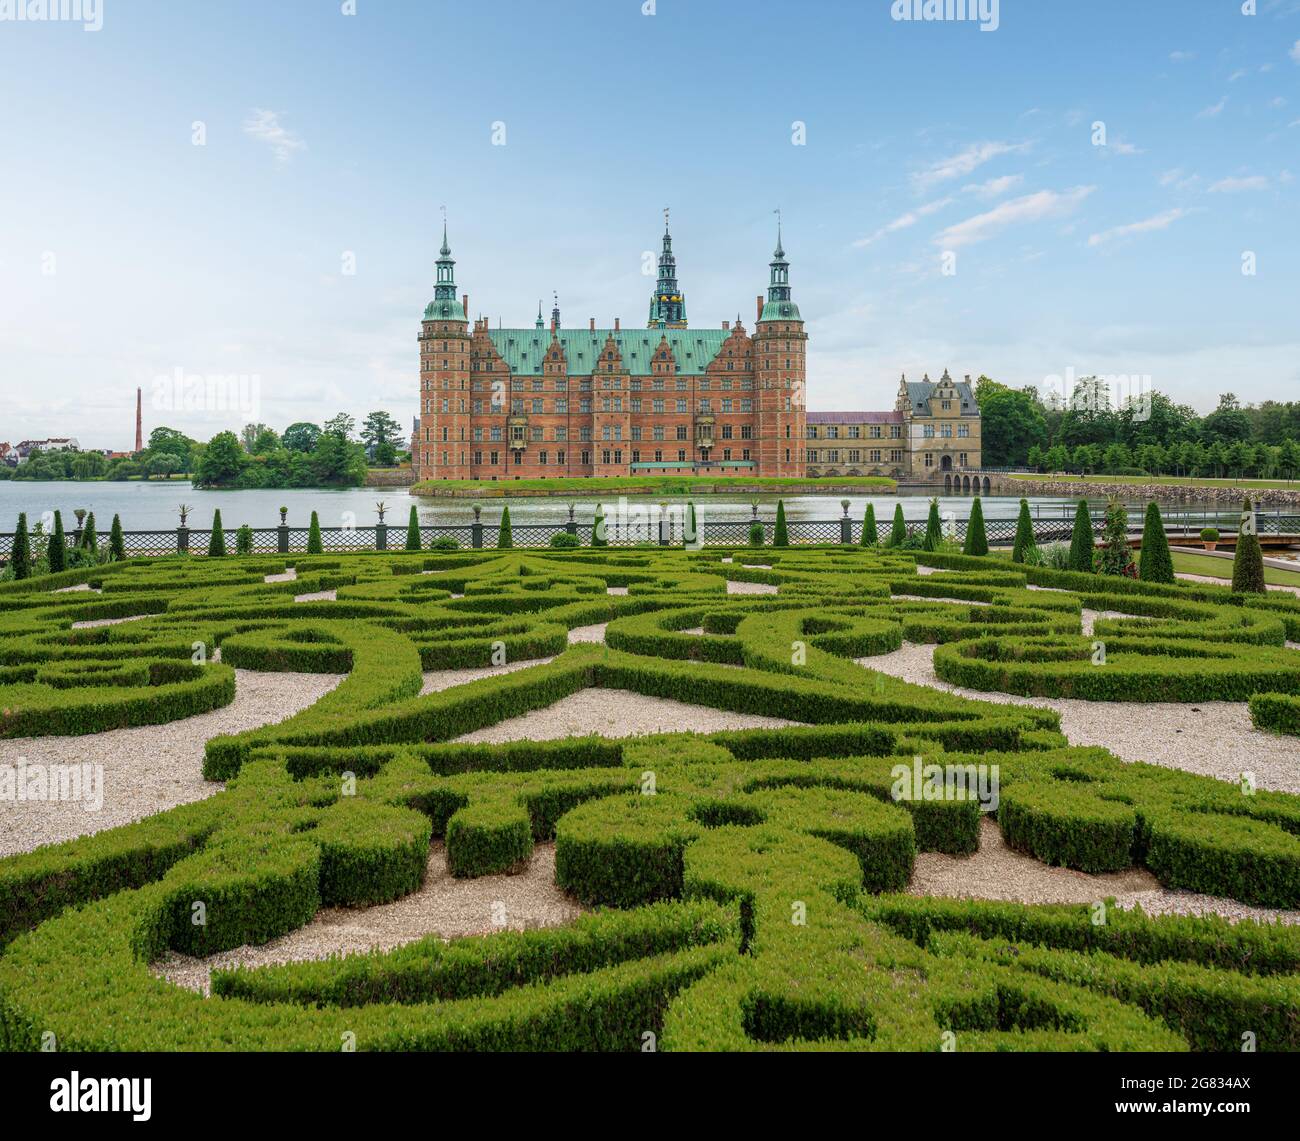 Parco barocco e giardini del castello di Frederiksborg - Hillerod, Danimarca Foto Stock